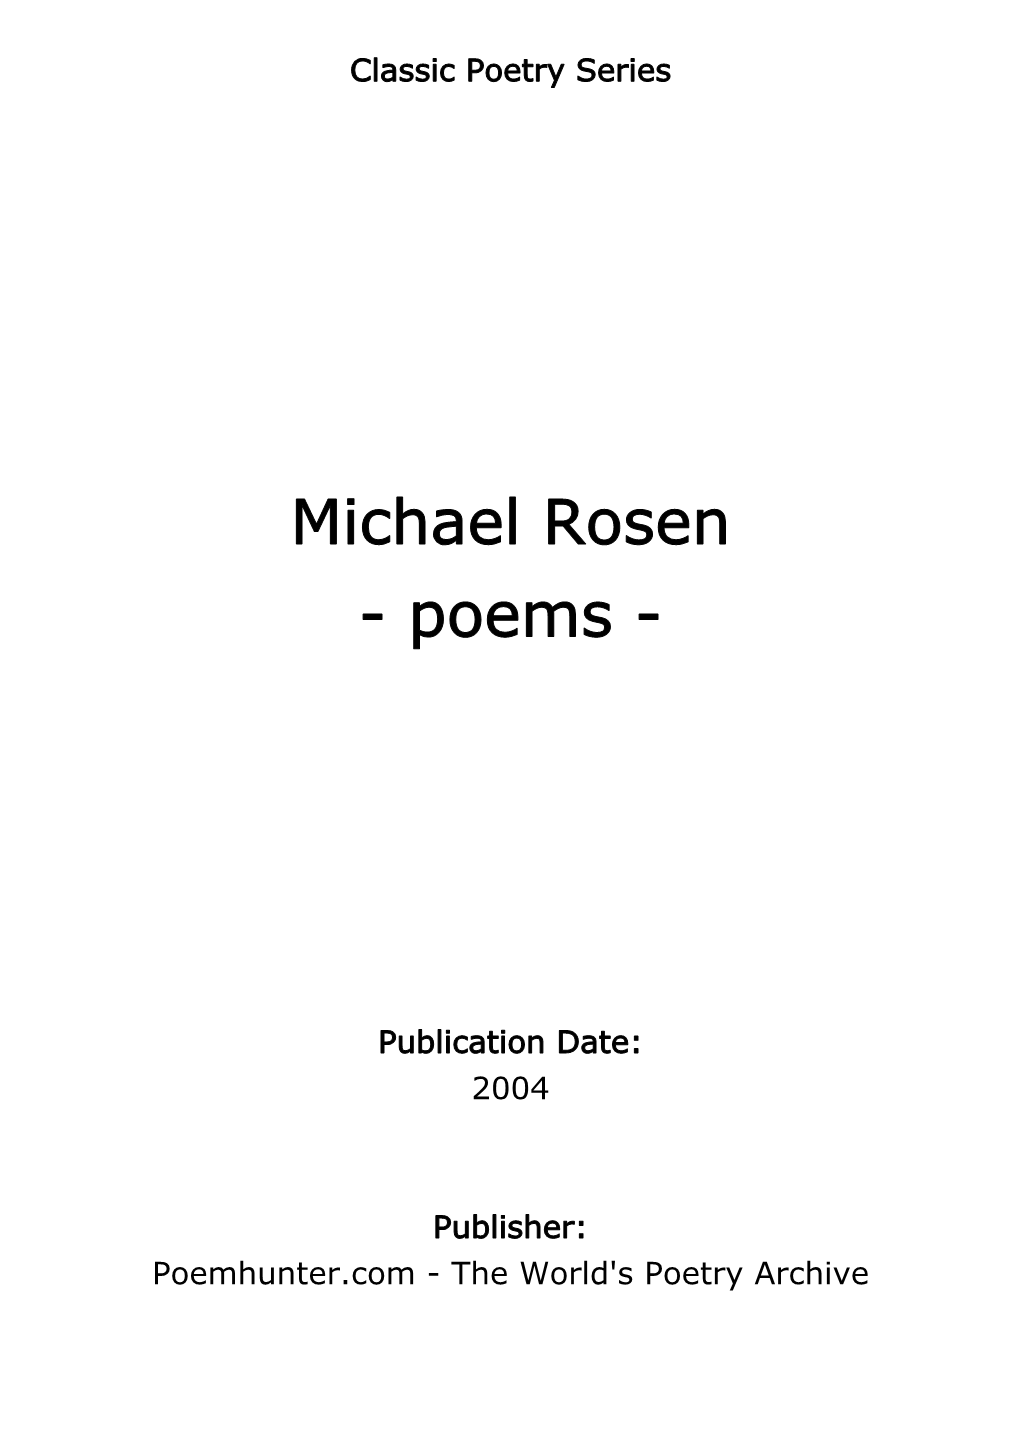 Michael Rosen - Poems